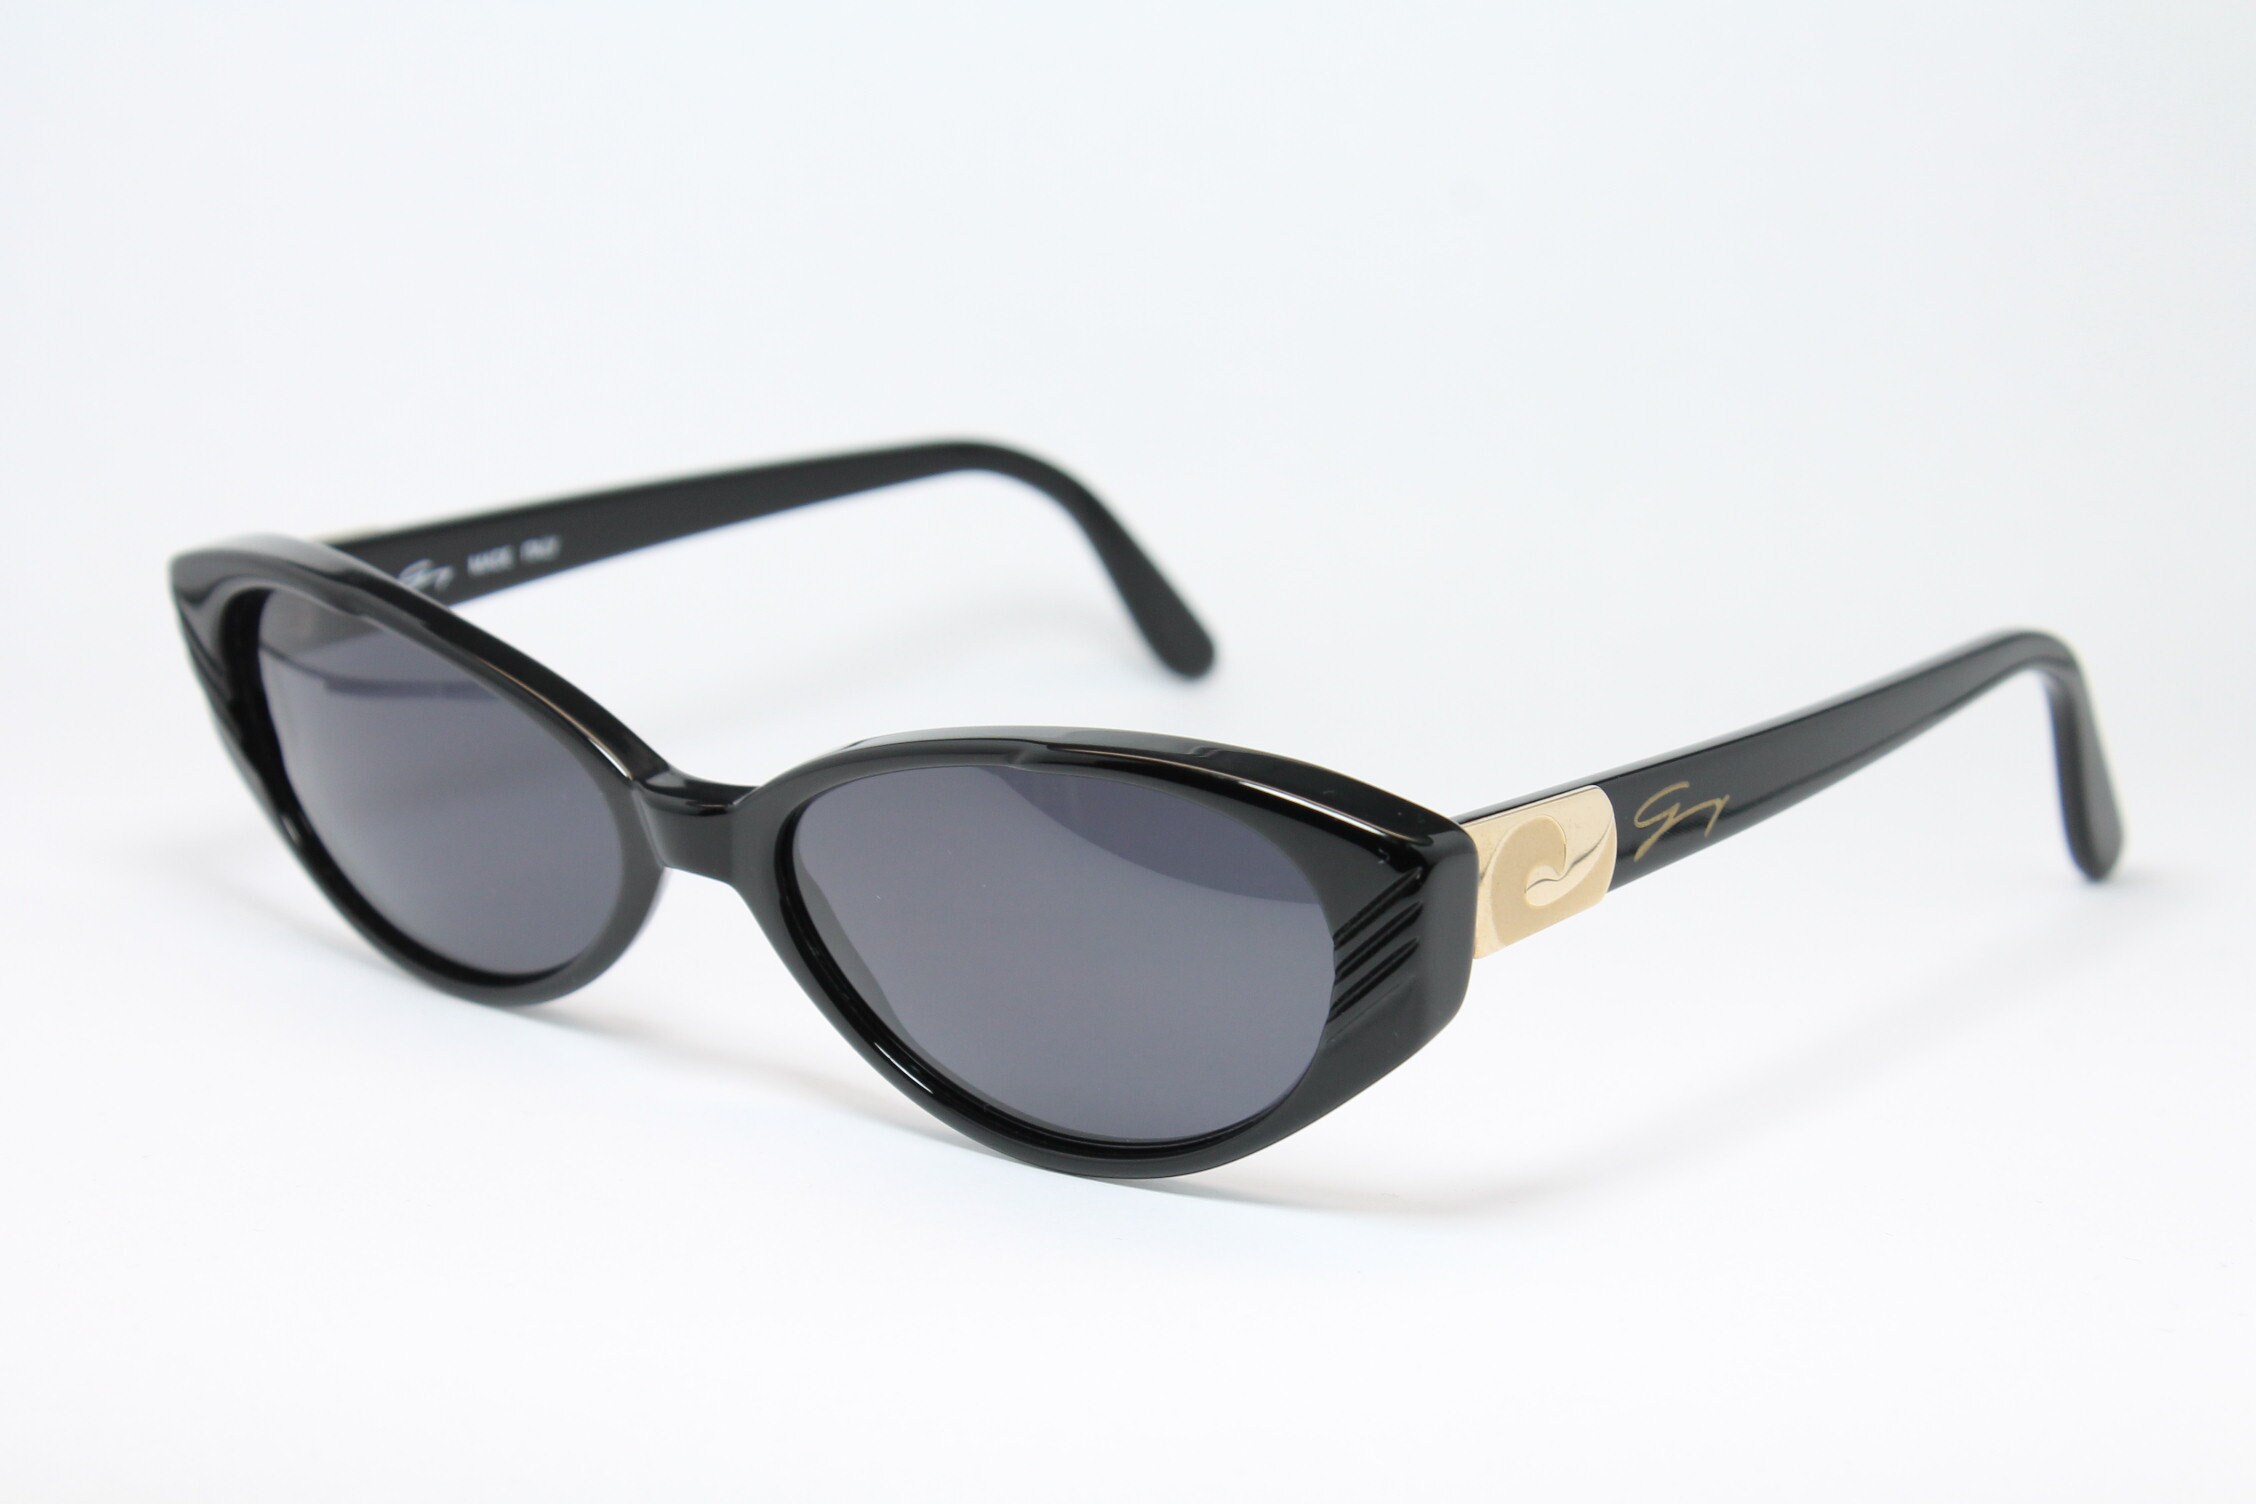 GENNY 175-S Unique Rare Cat-eye Vintage Sunglasses Lunettes - Etsy Finland